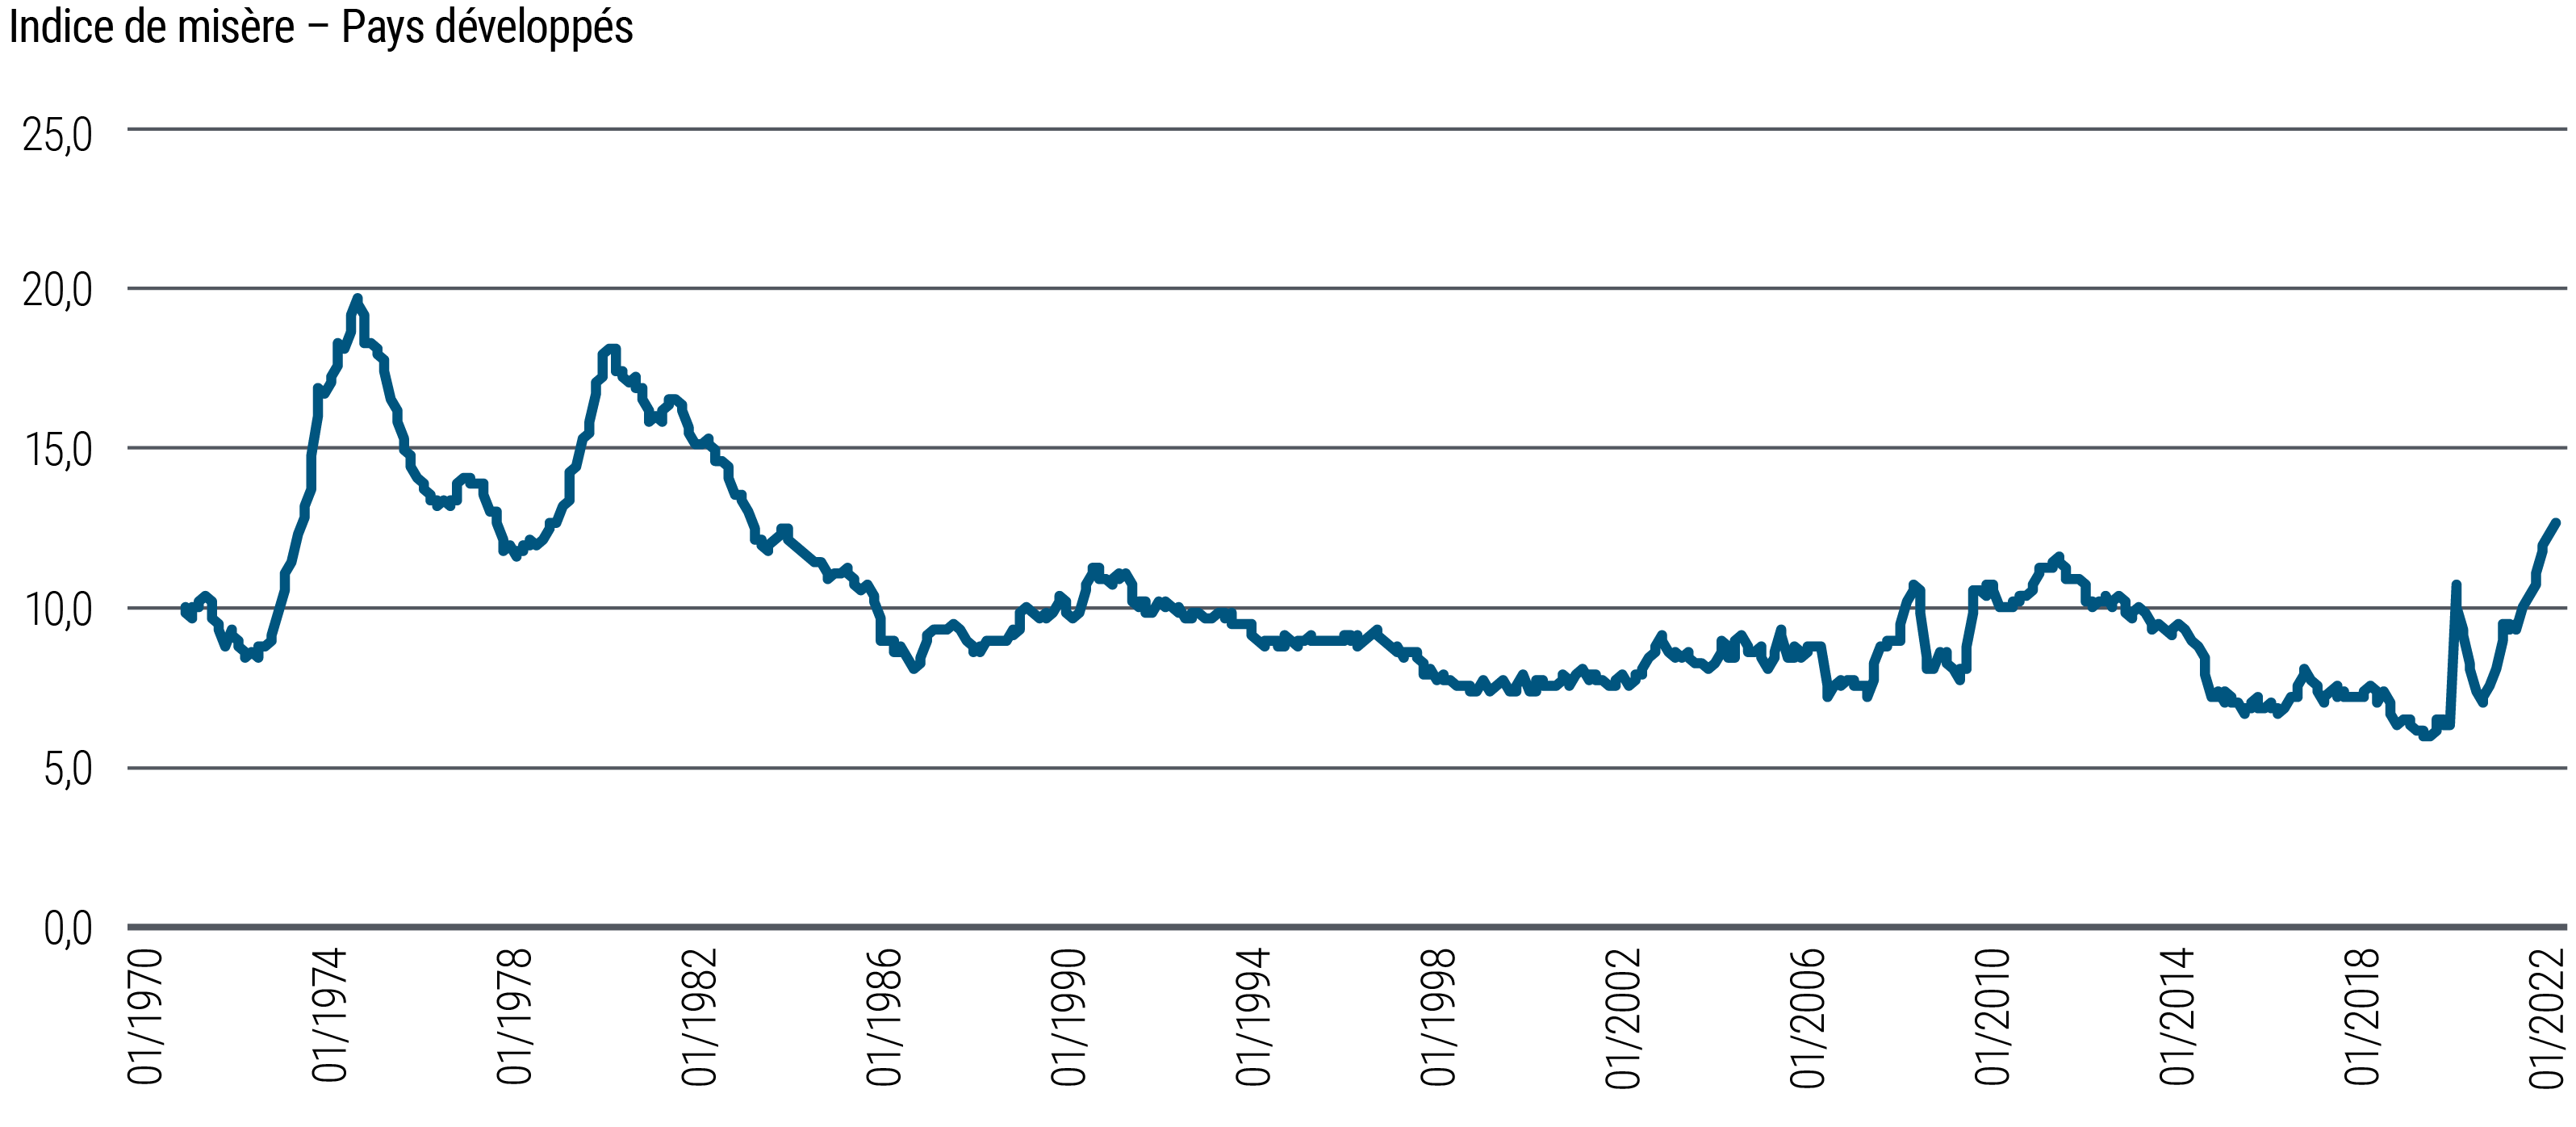 La courbe de l’indice de misère représente la somme de l’inflation et du chômage (l’une et l’autre en pourcentage) dans cinq économies développées, de janvier 1970 à septembre 2022. Les deux sommets atteints en 1975 et en 1982, soit 20 et 18 respectivement, indiquent des périodes de misère économique significative. Par la suite, l’indice a enregistré une tendance générale à la baisse, avec un creux en novembre 2019 de 6. Depuis, il a amorcé une nette remontée, avec un nouveau sommet au début de la pandémie de la COVID-19, puis un autre après une brève accalmie. L’indice de misère a en effet atteint quasiment 13 au troisième trimestre 2022.